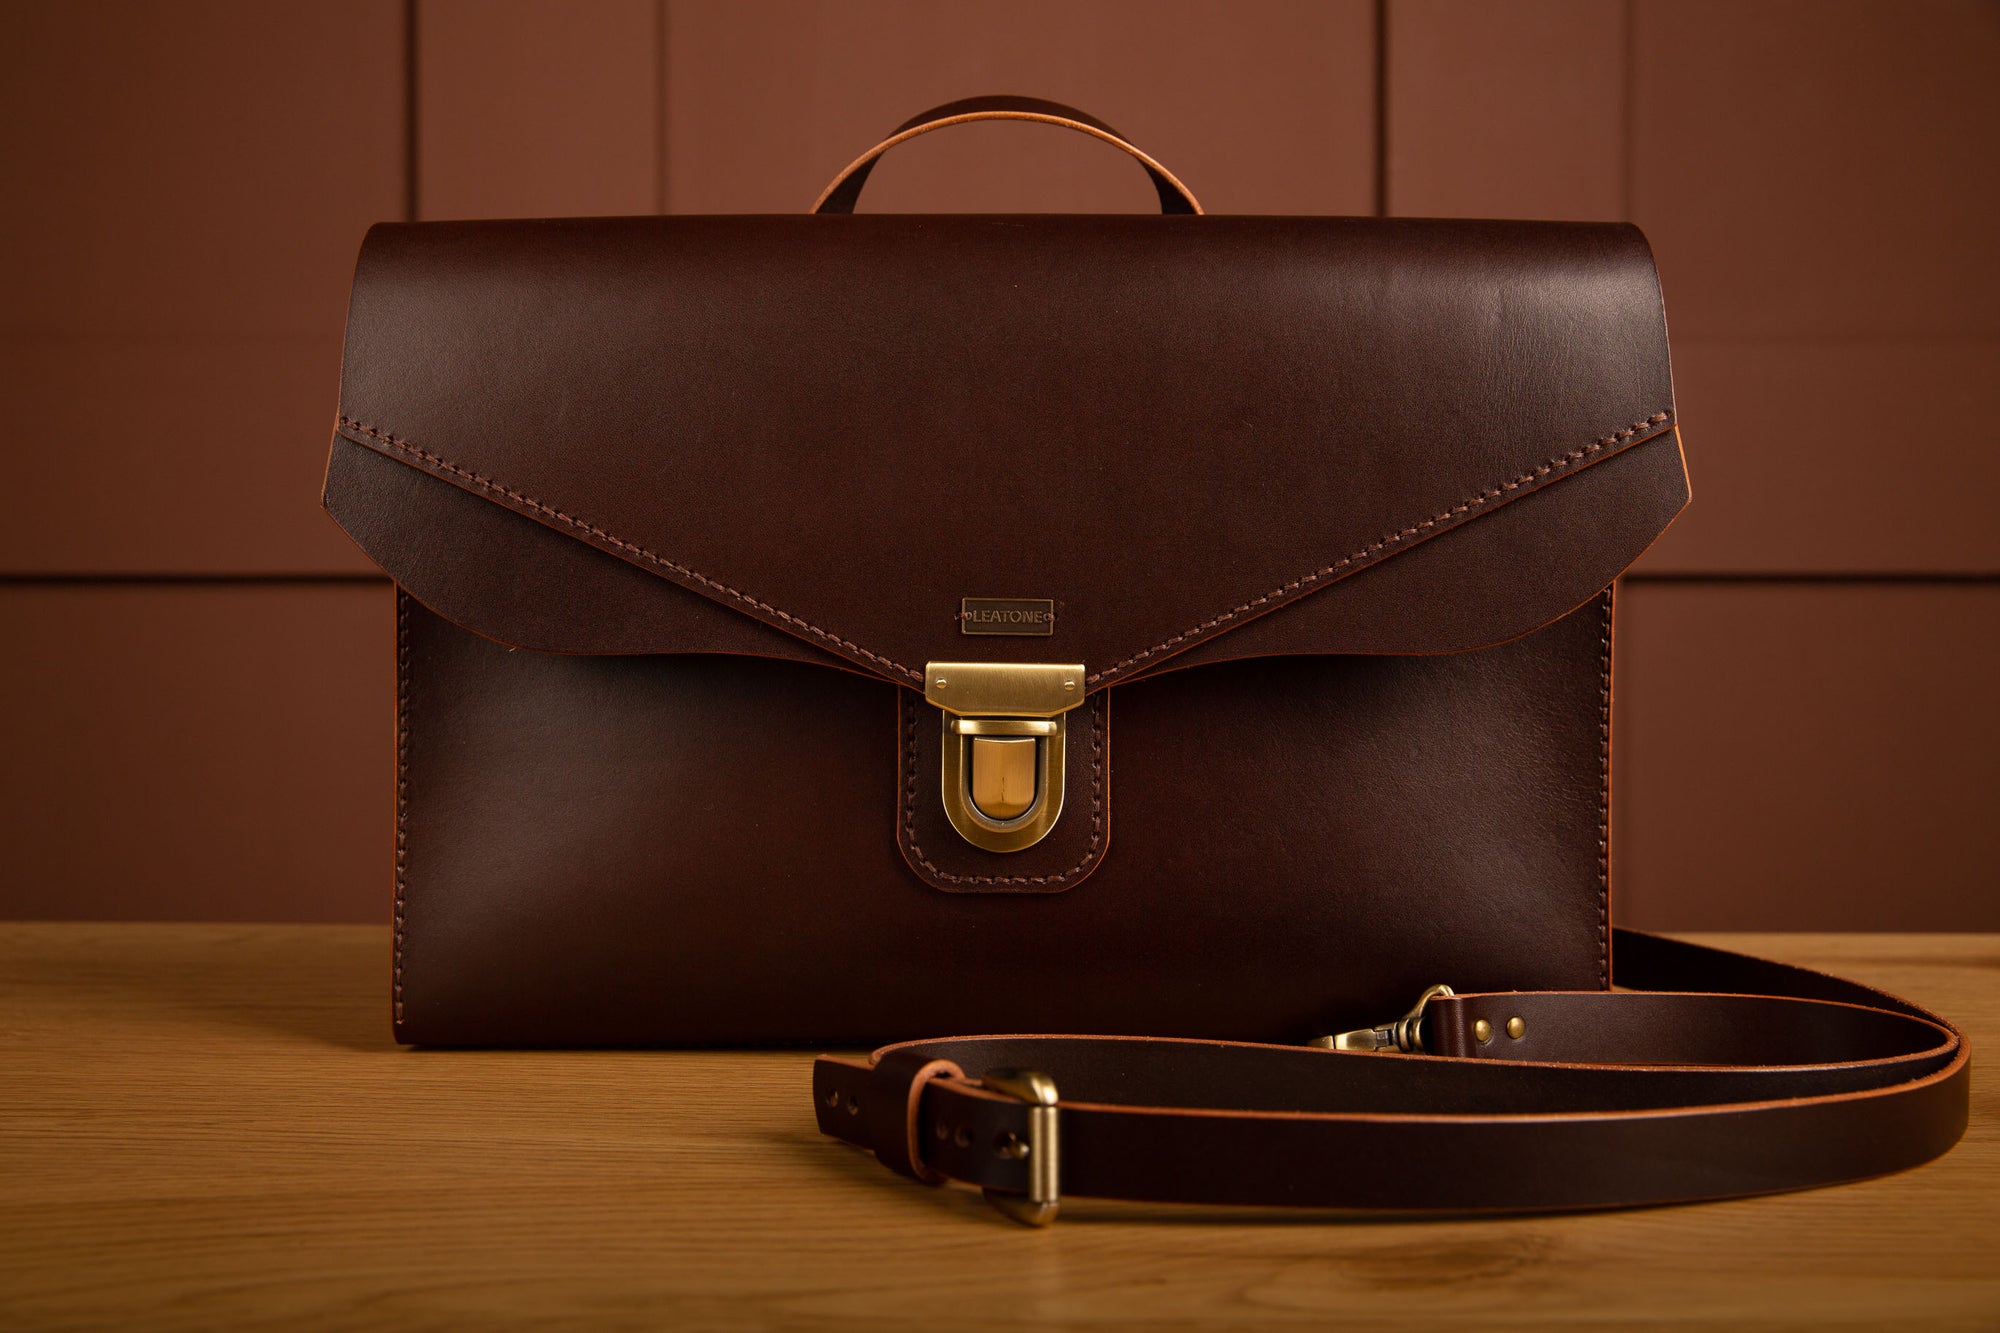 LEATONE "Retrato" leather briefcase in chestnut color